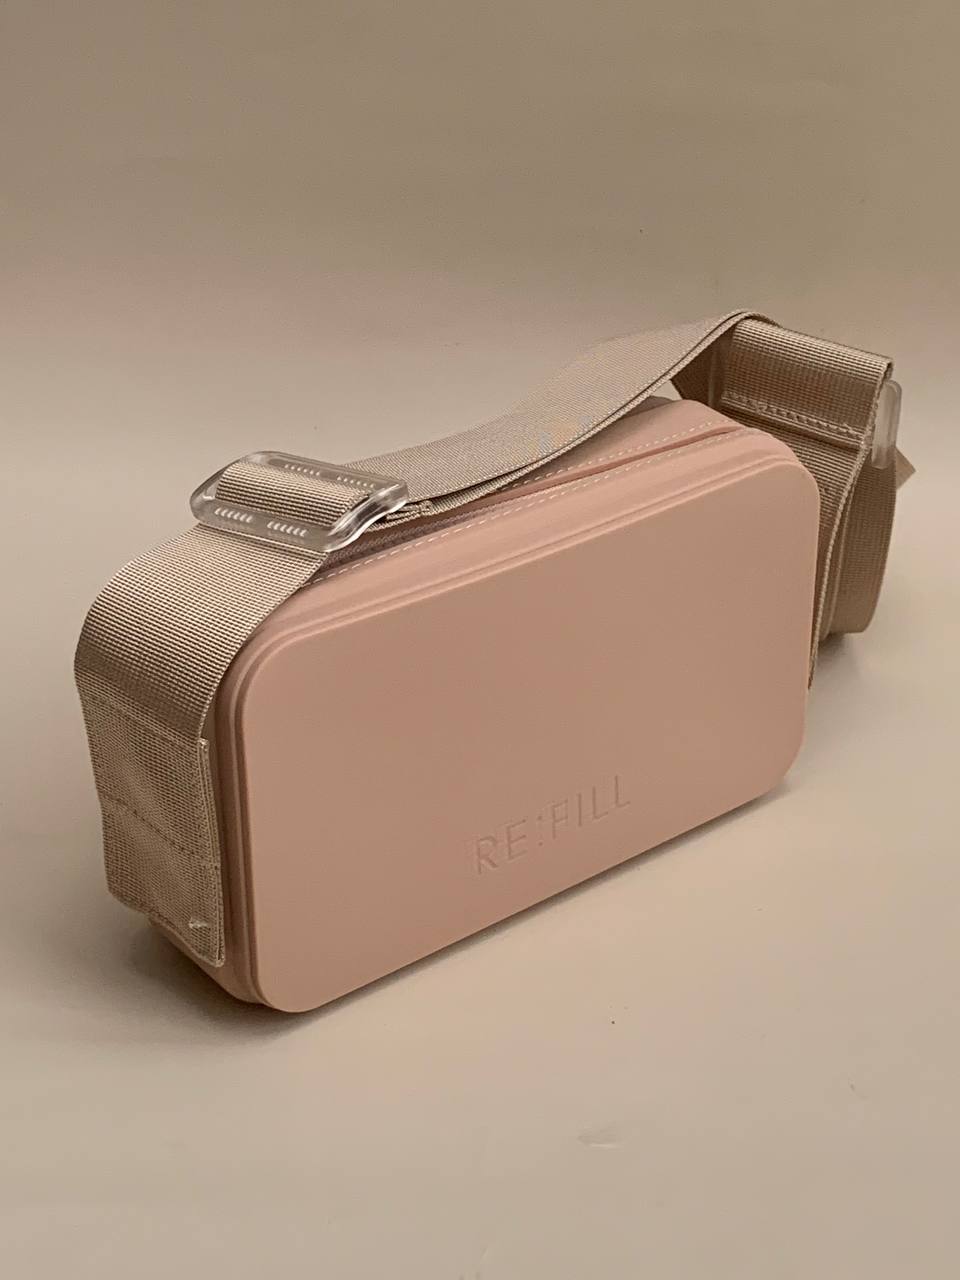 RE:FILL Silicone Camera Bag